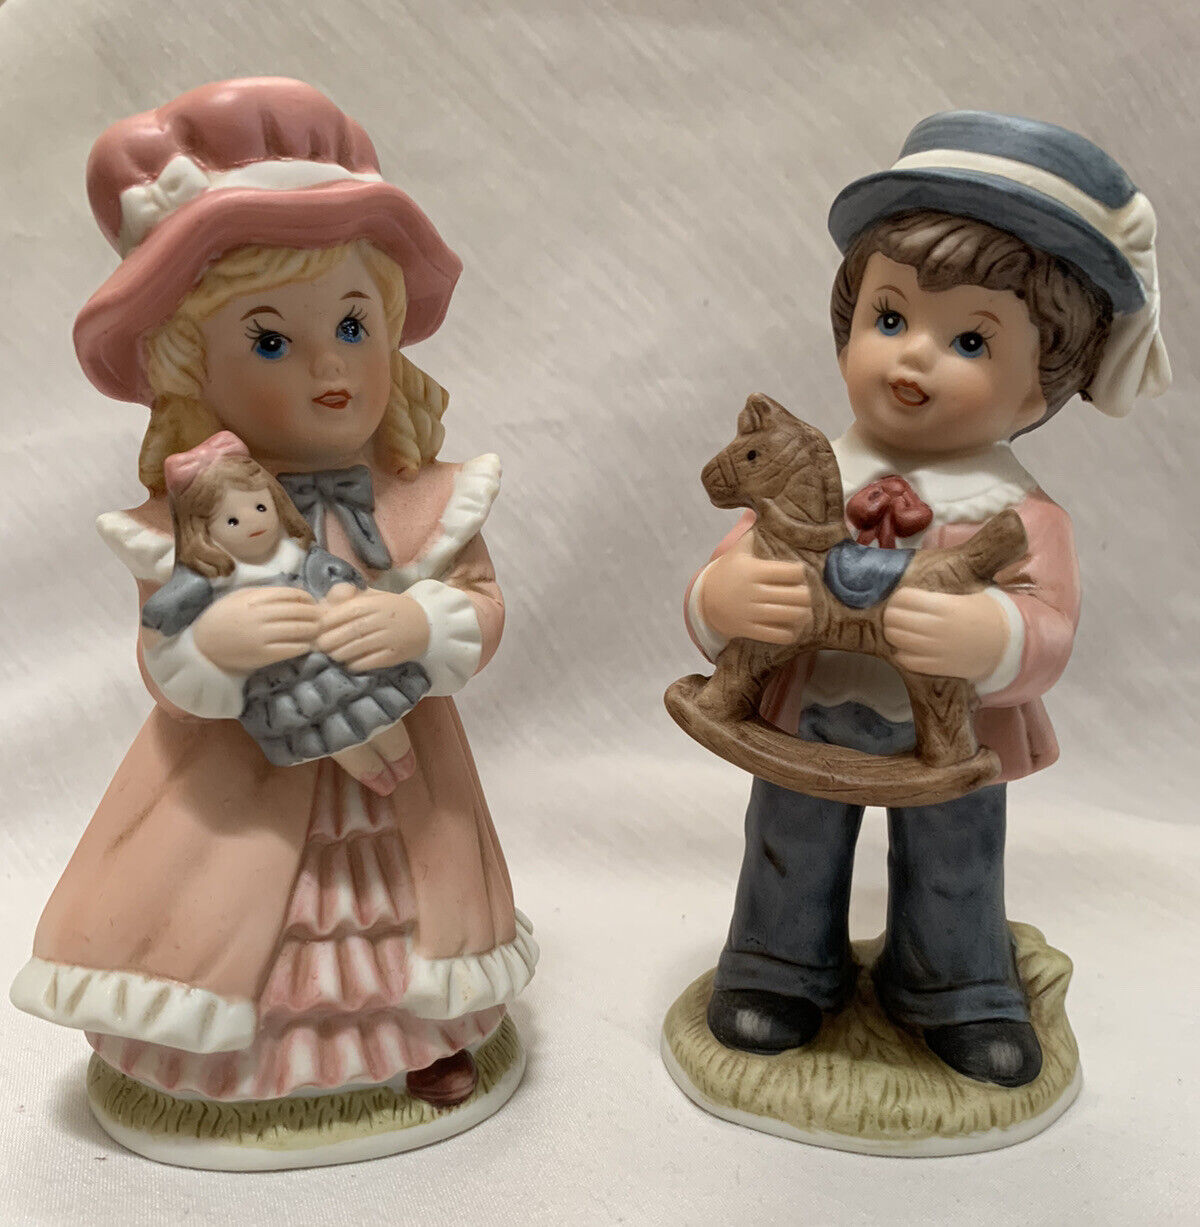 Vintage Homco Figurines Victorian Boy & Girl Porcelain Rocking Horse Doll #1419